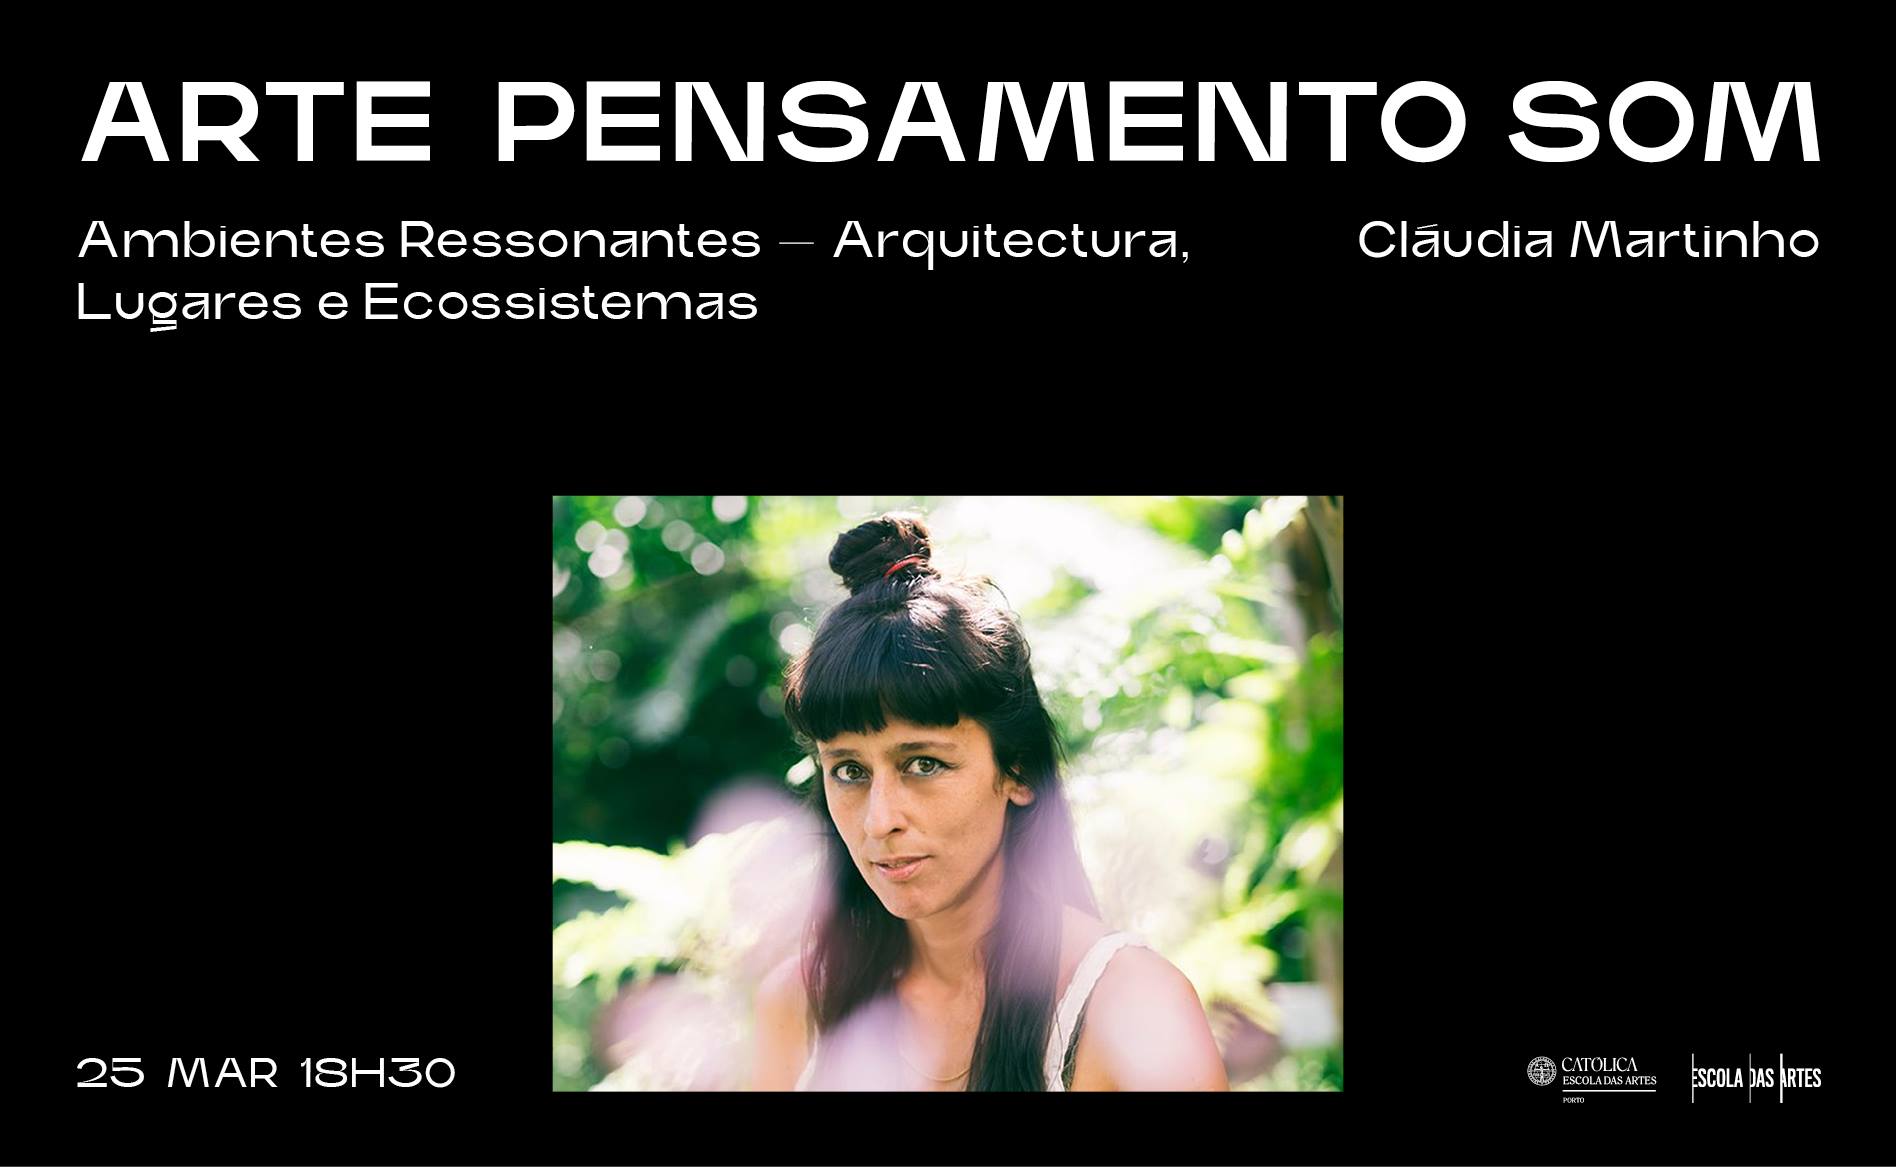 Cláudia Martinho · Ambientes Ressonantes — Arquitectura, Lugares e Ecossistemas